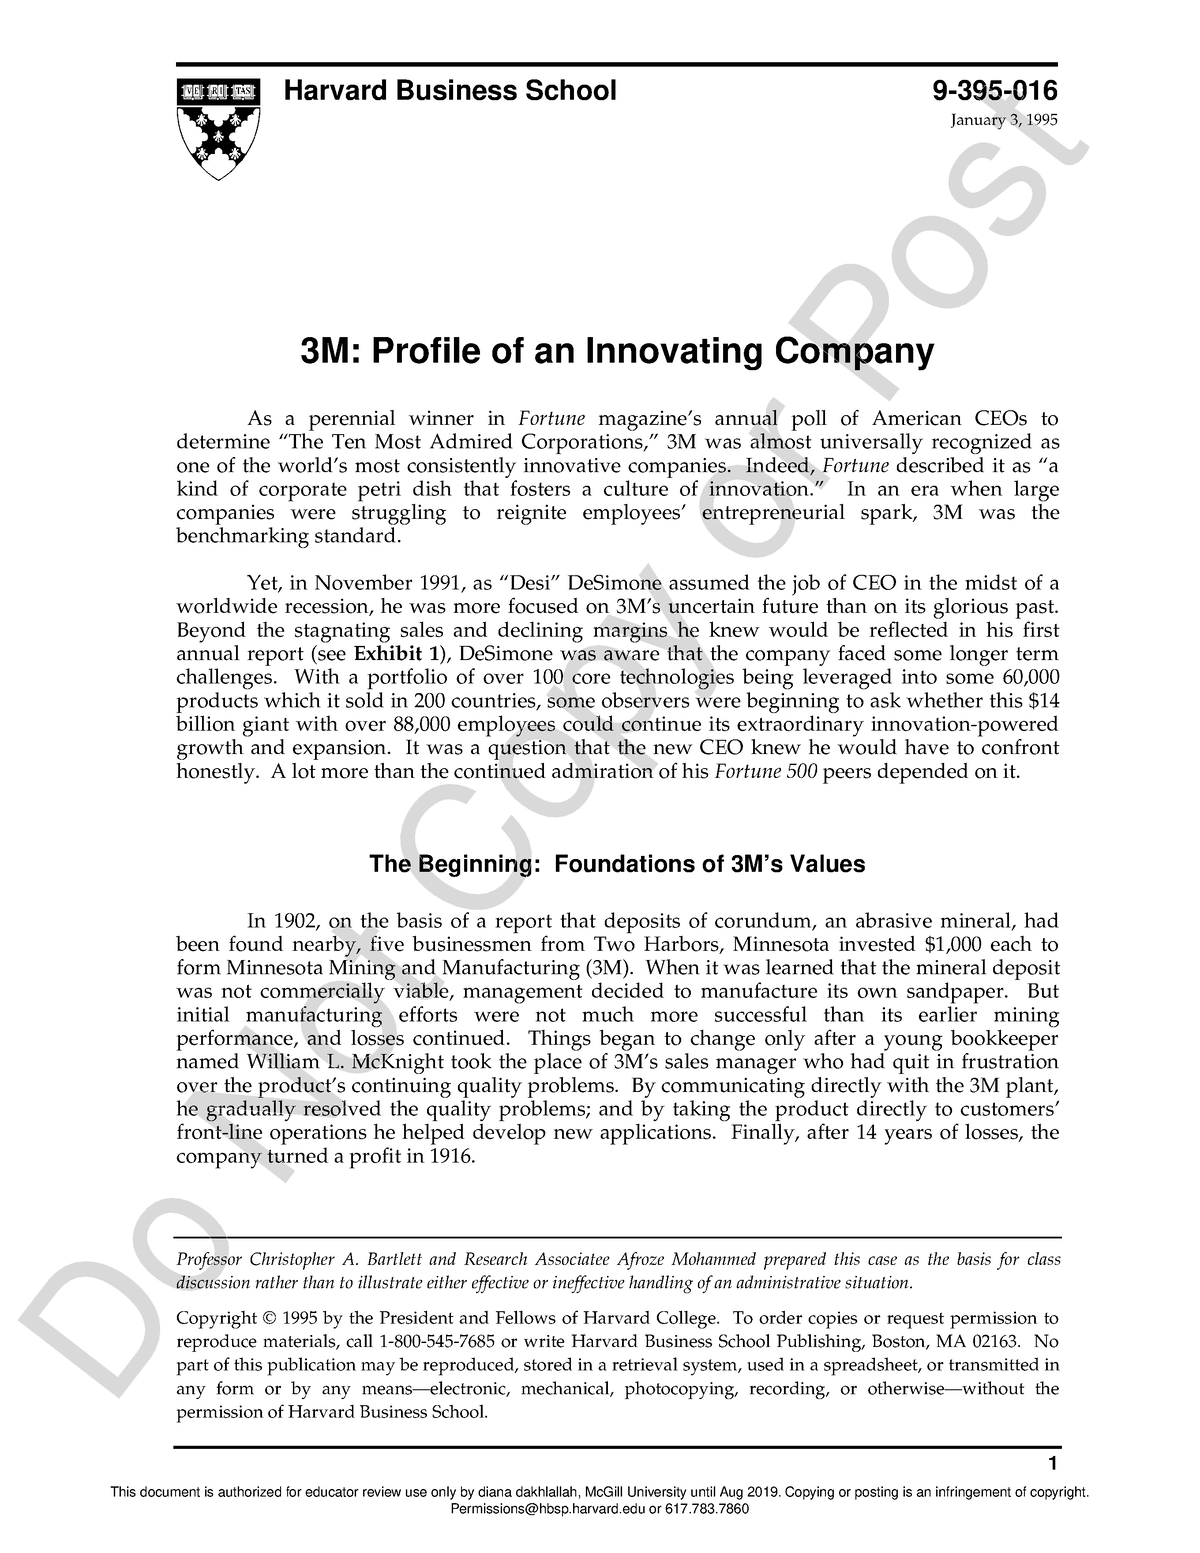 3m case study pdf